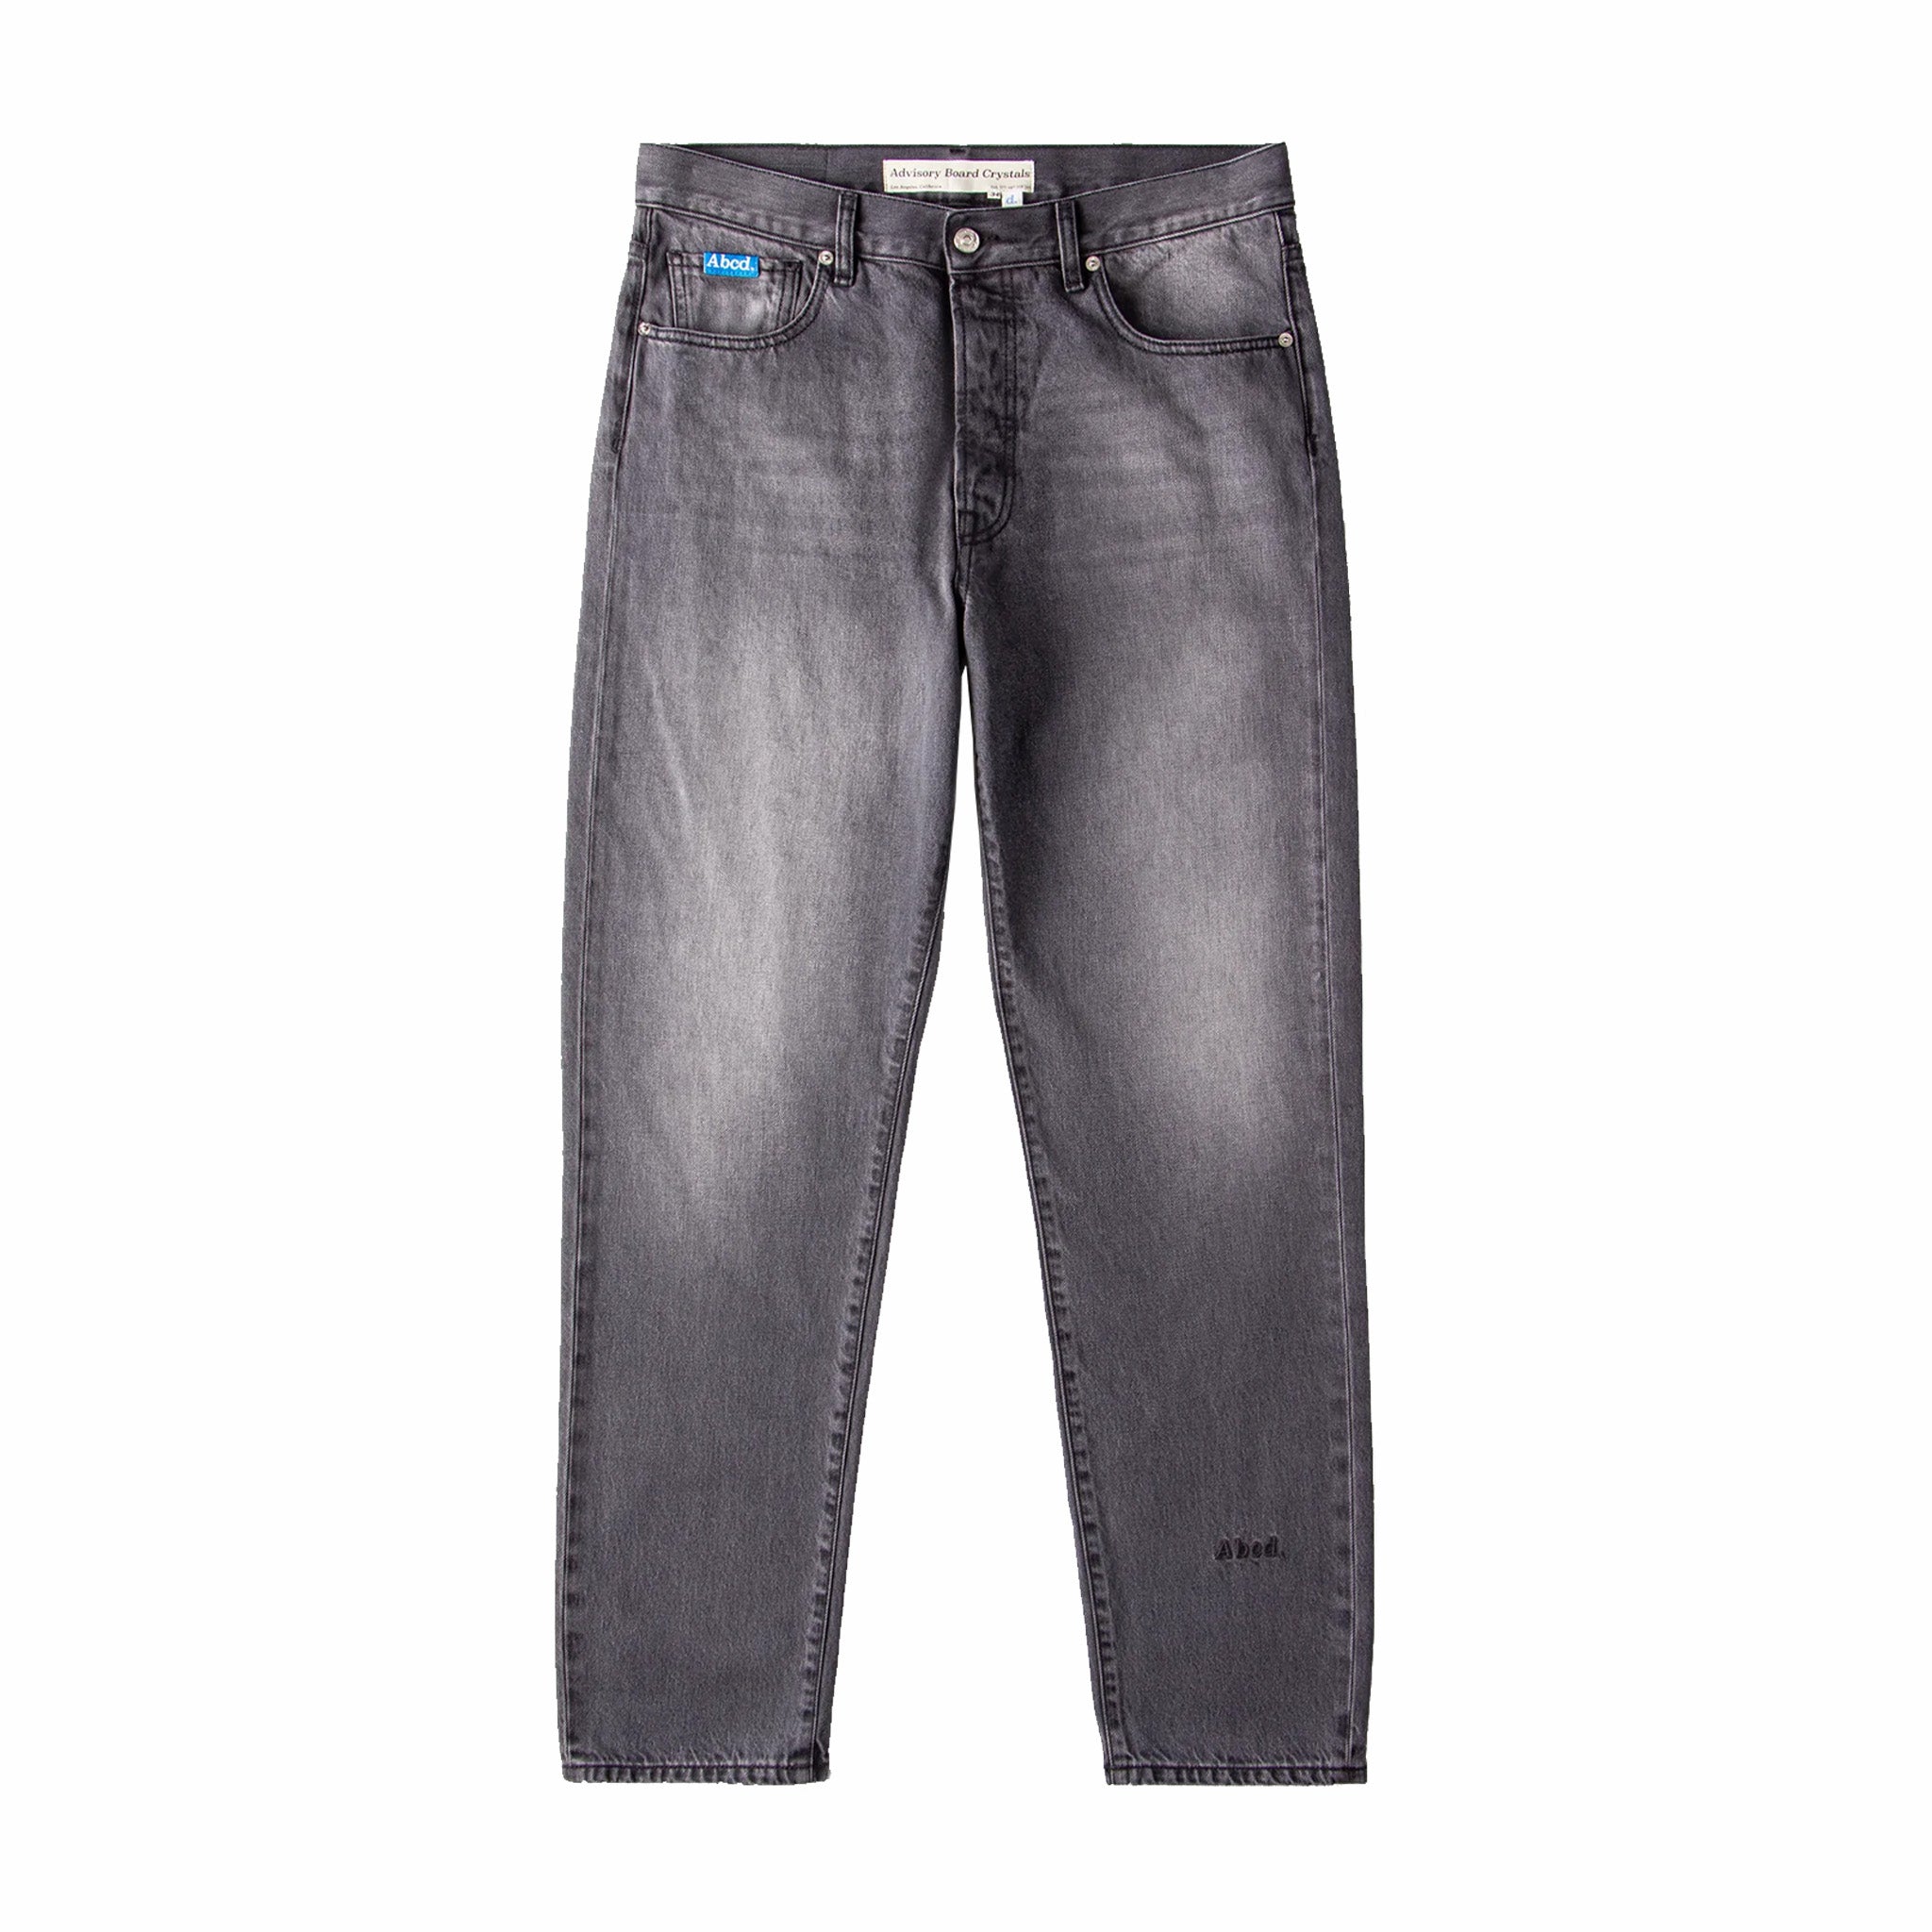 Cristalli del comitato consultivo, Abcd. Jeans dal taglio originale (grigio sbiadito)